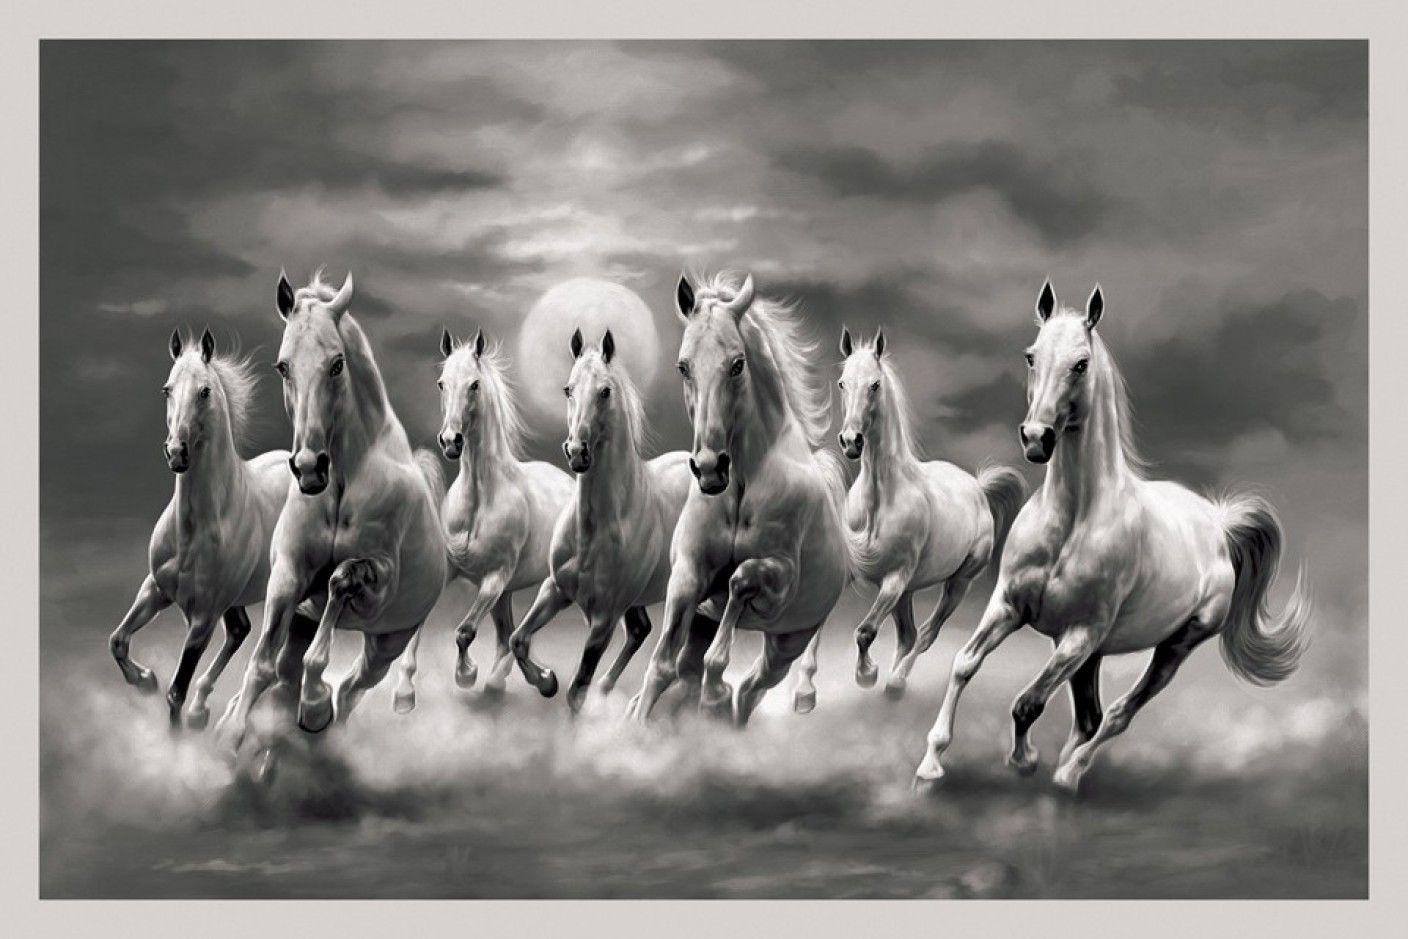 Hình nền desktop đẹp 7 con ngựa sẽ làm tăng tính thẩm mỹ cho máy tính của bạn. Hình ảnh những con ngựa đang chạy tung tăng giữa không gian mênh mông chắc chắn sẽ khiến bạn cảm thấy sảng khoái và thư giãn.